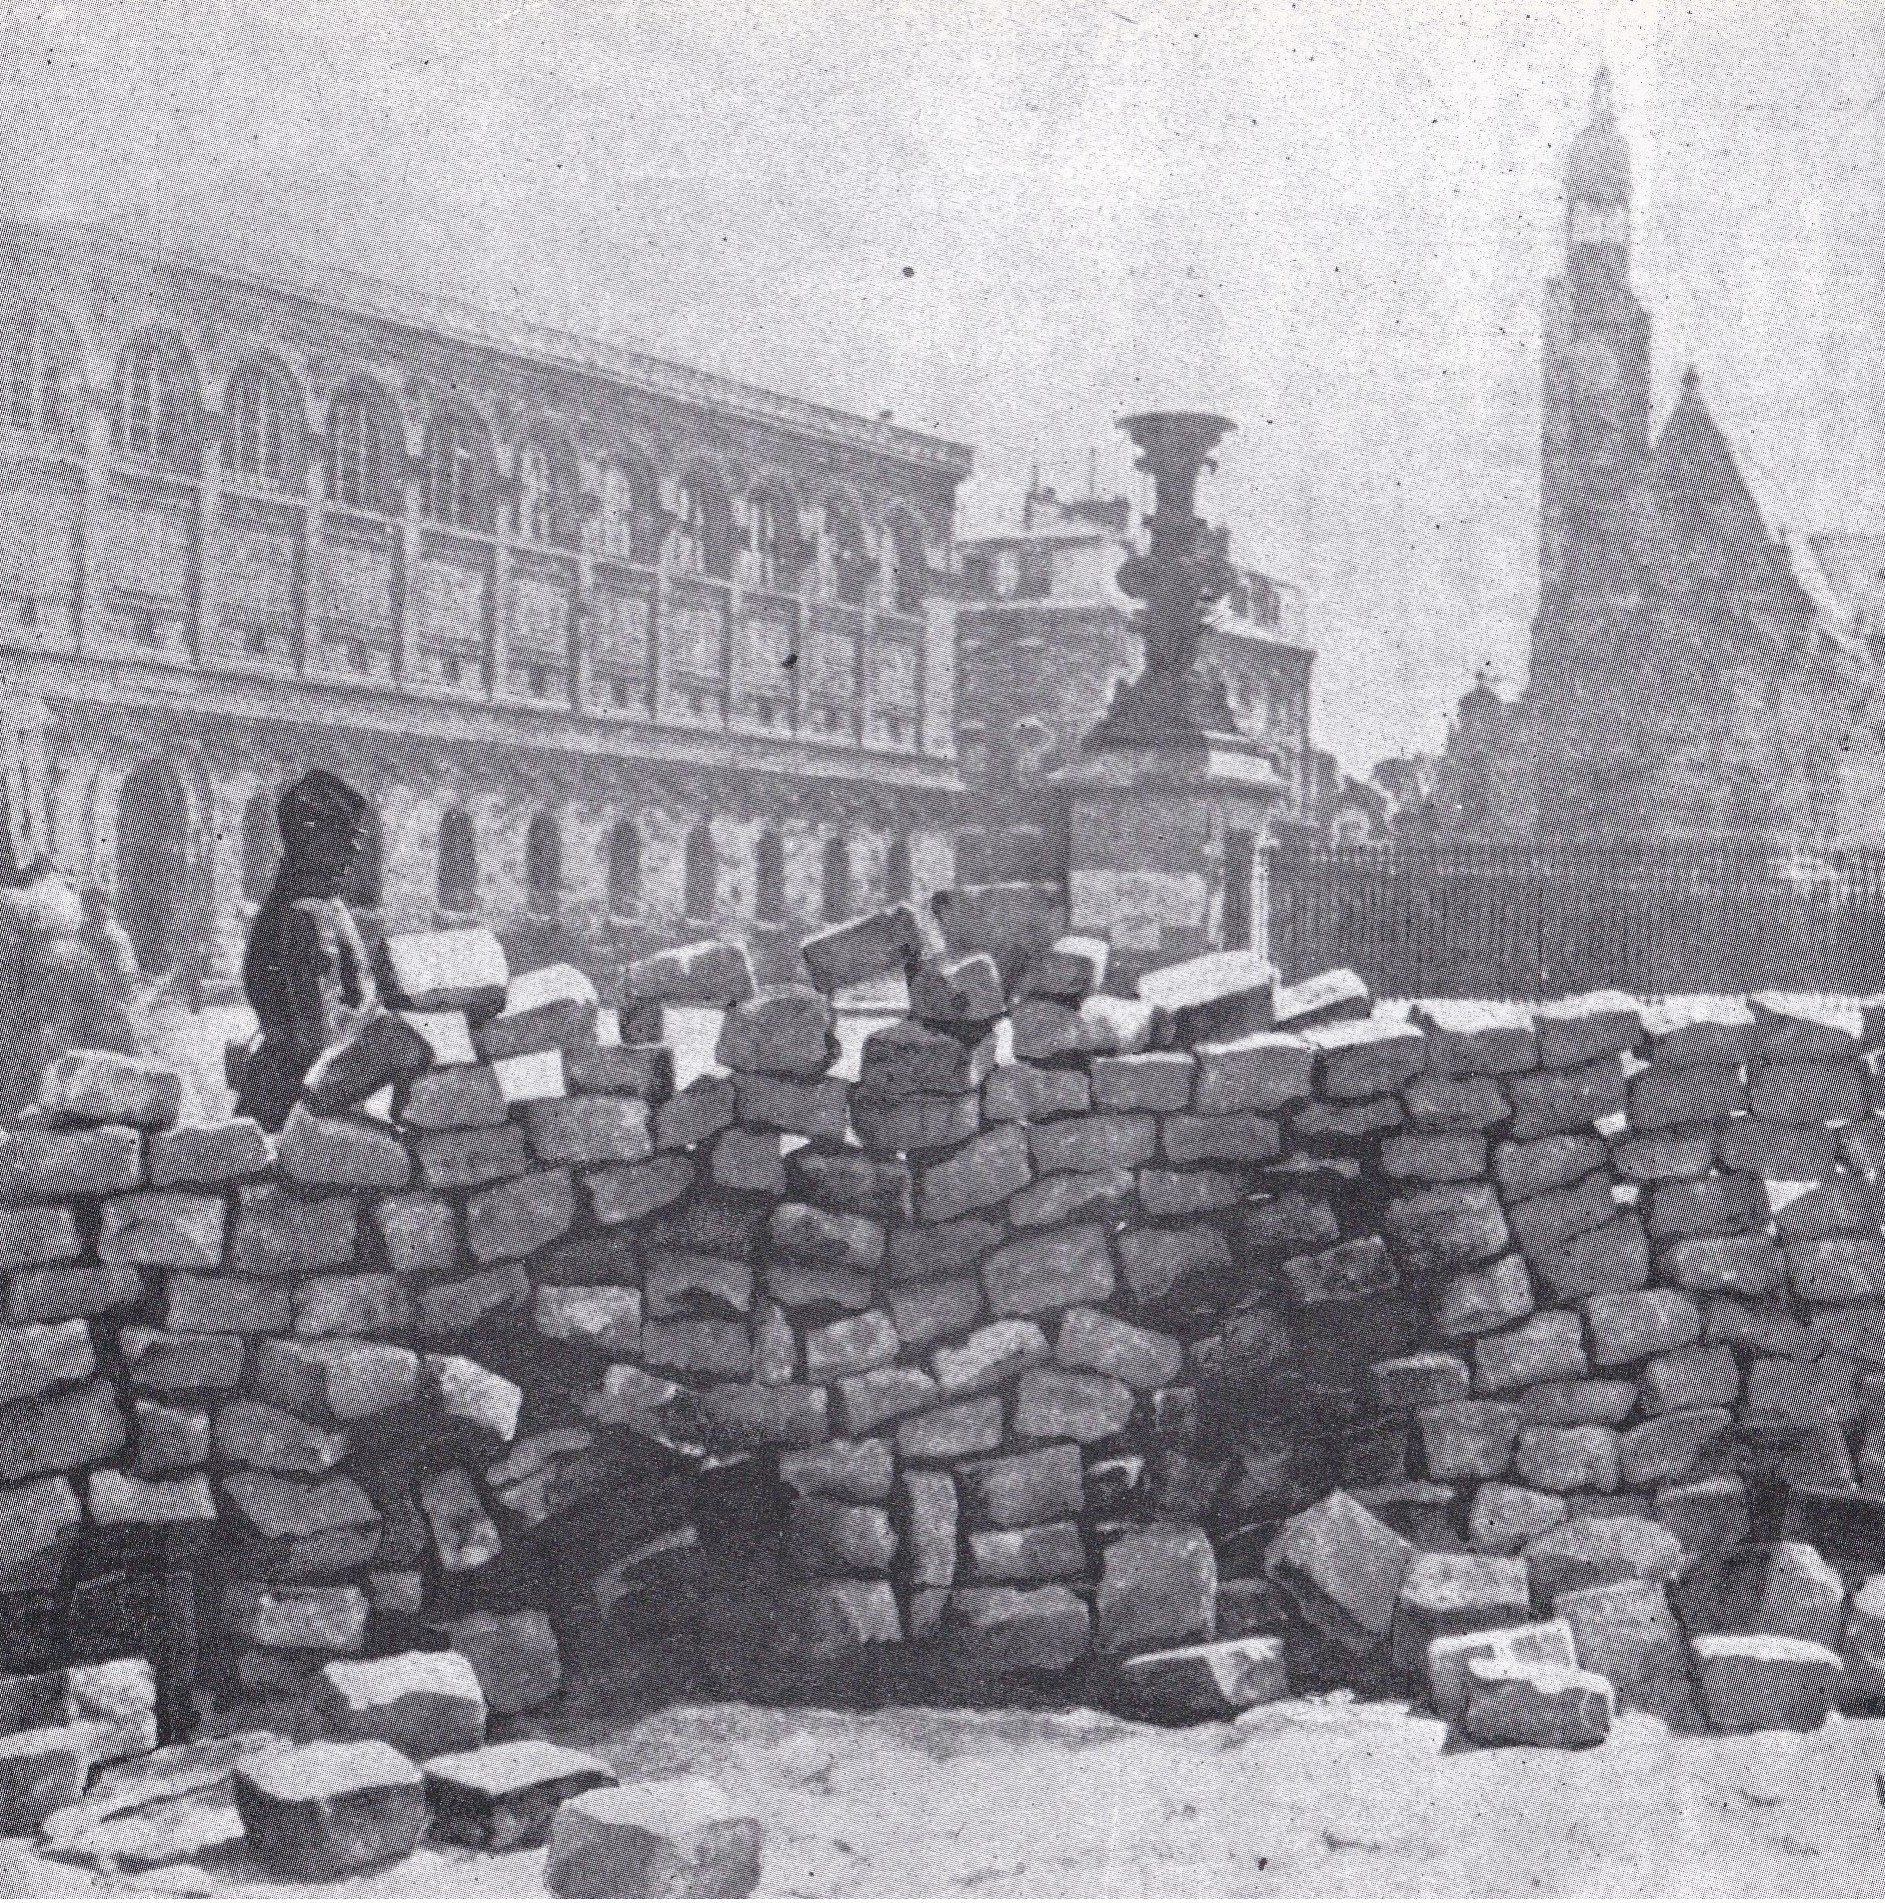 Barricade du Panthéon en mai 1871 - Du livre "Braire sur les traces des communards", ©  Éditions Amis de la Commune, 1988